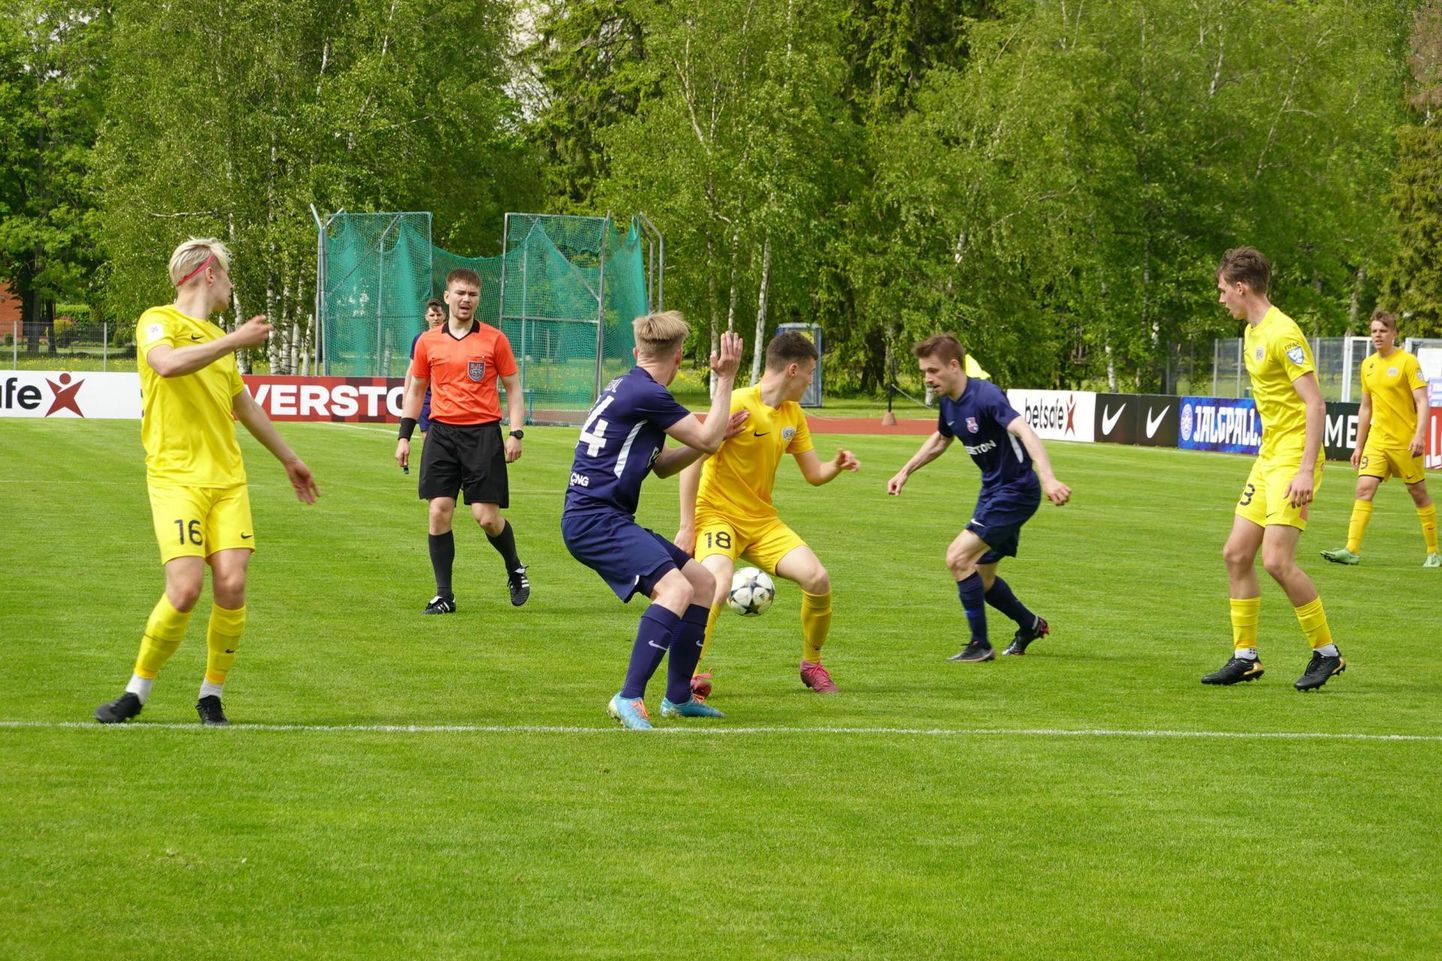 Paide linnameeskond III (sinises) alistas viimases teise liiga mängus FC Kuressaare U21 1:0 ja on endiselt turniiritabelis esimene. Teisisõnu on meeskond aastaid olnud Eesti amatöörjalgpalli tipus.